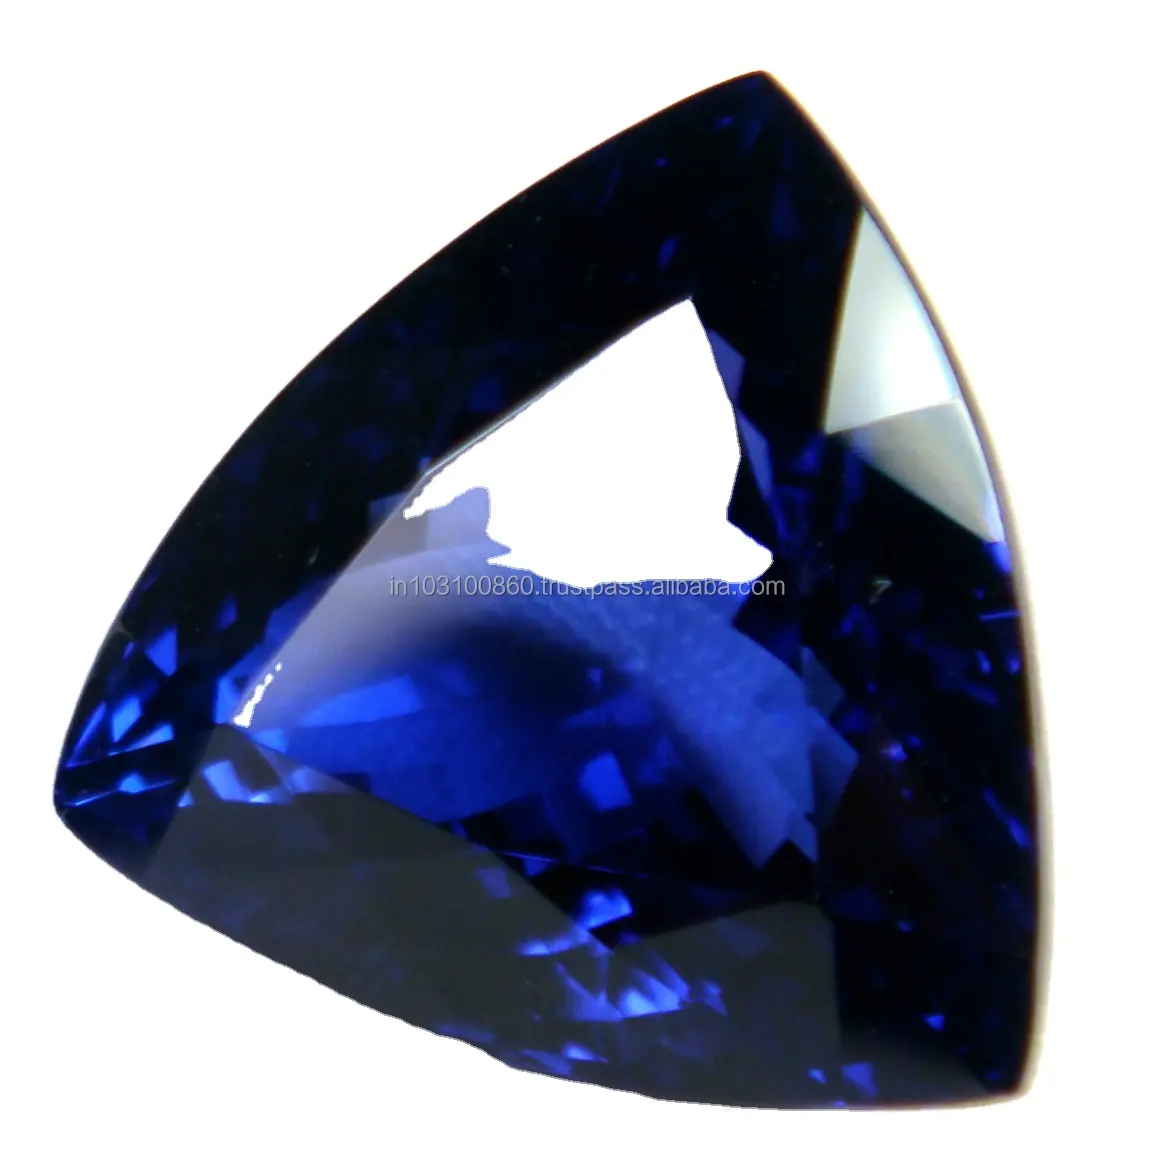 नीली रत्न टैन्ज़ानाइट ट्रिलियन कट पत्थर की अच्छी गुणवत्ता वाली प्राकृतिक प्रमाणित टैनज़ानाइट ढीली थोक थोक थोक कट रत्न कारखाना